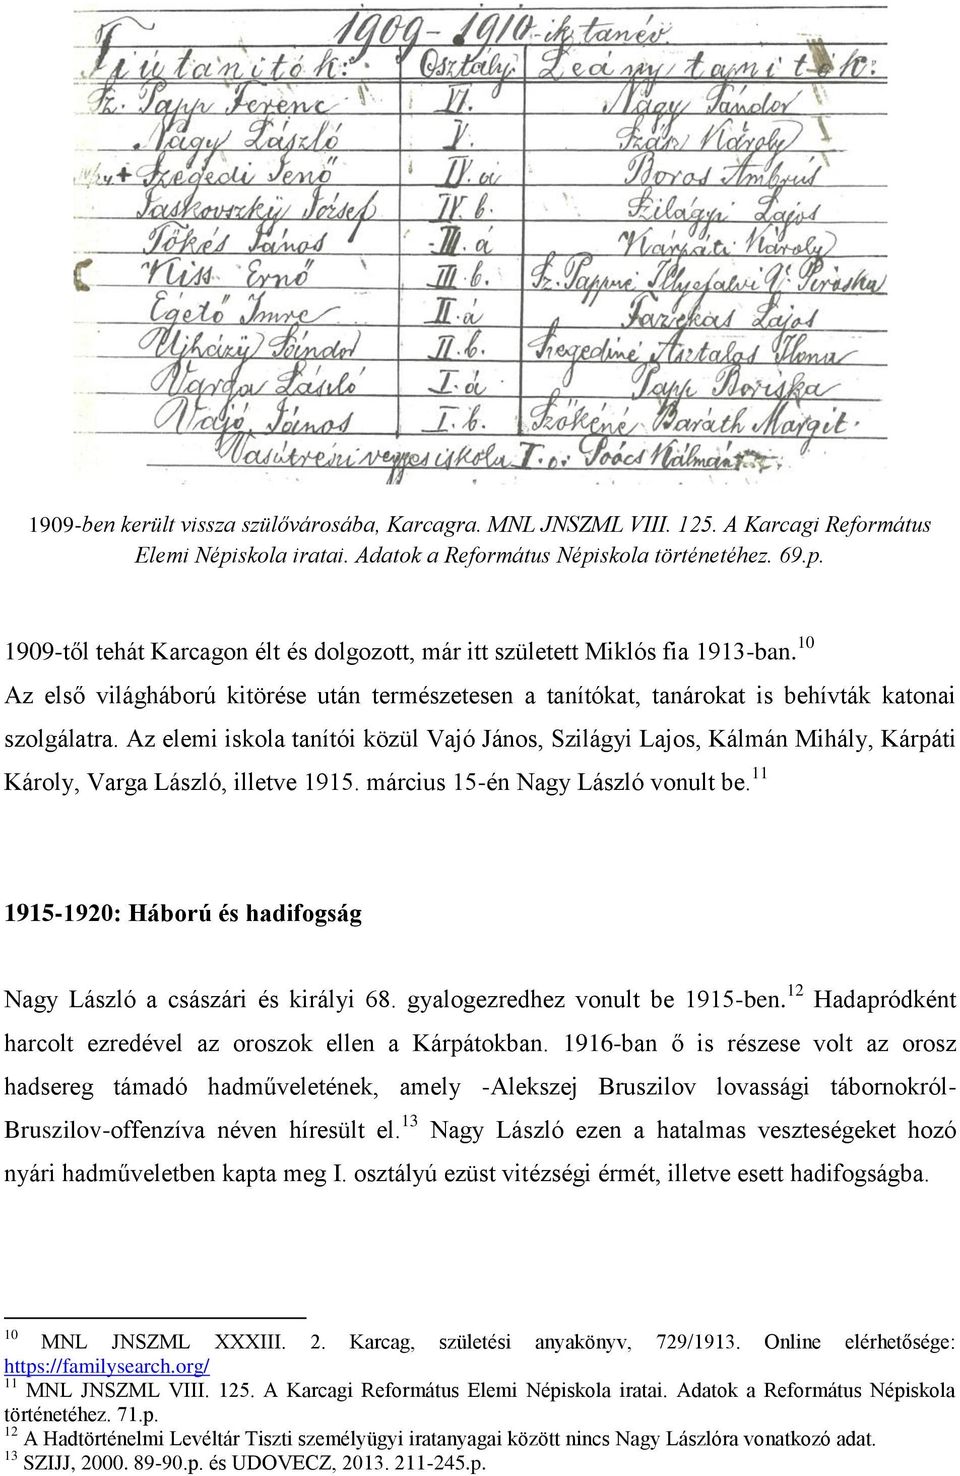 Az elemi iskola tanítói közül Vajó János, Szilágyi Lajos, Kálmán Mihály, Kárpáti Károly, Varga László, illetve 1915. március 15-én Nagy László vonult be.